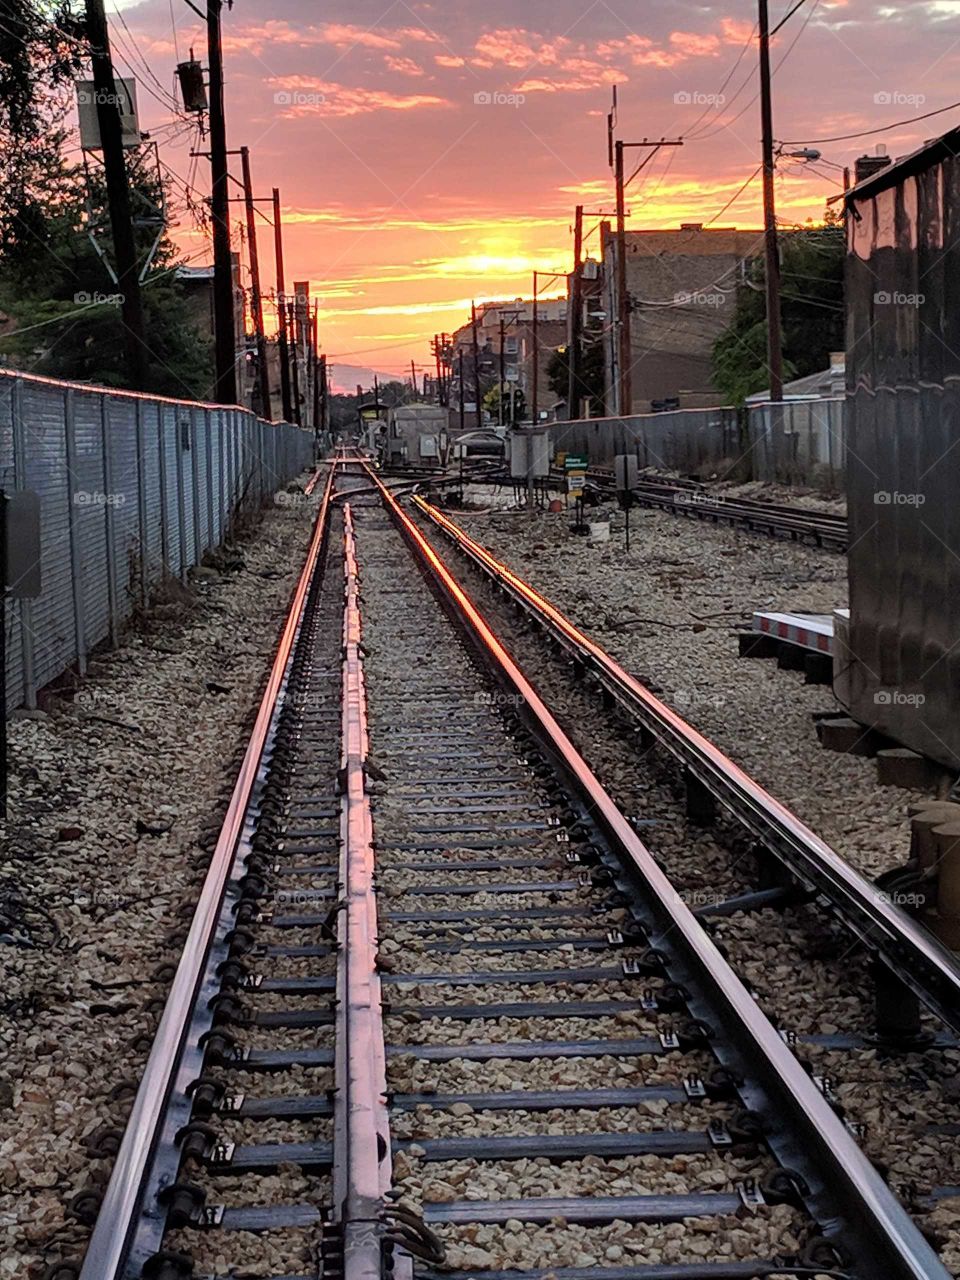 beautiful sunset reflecting off train tracks